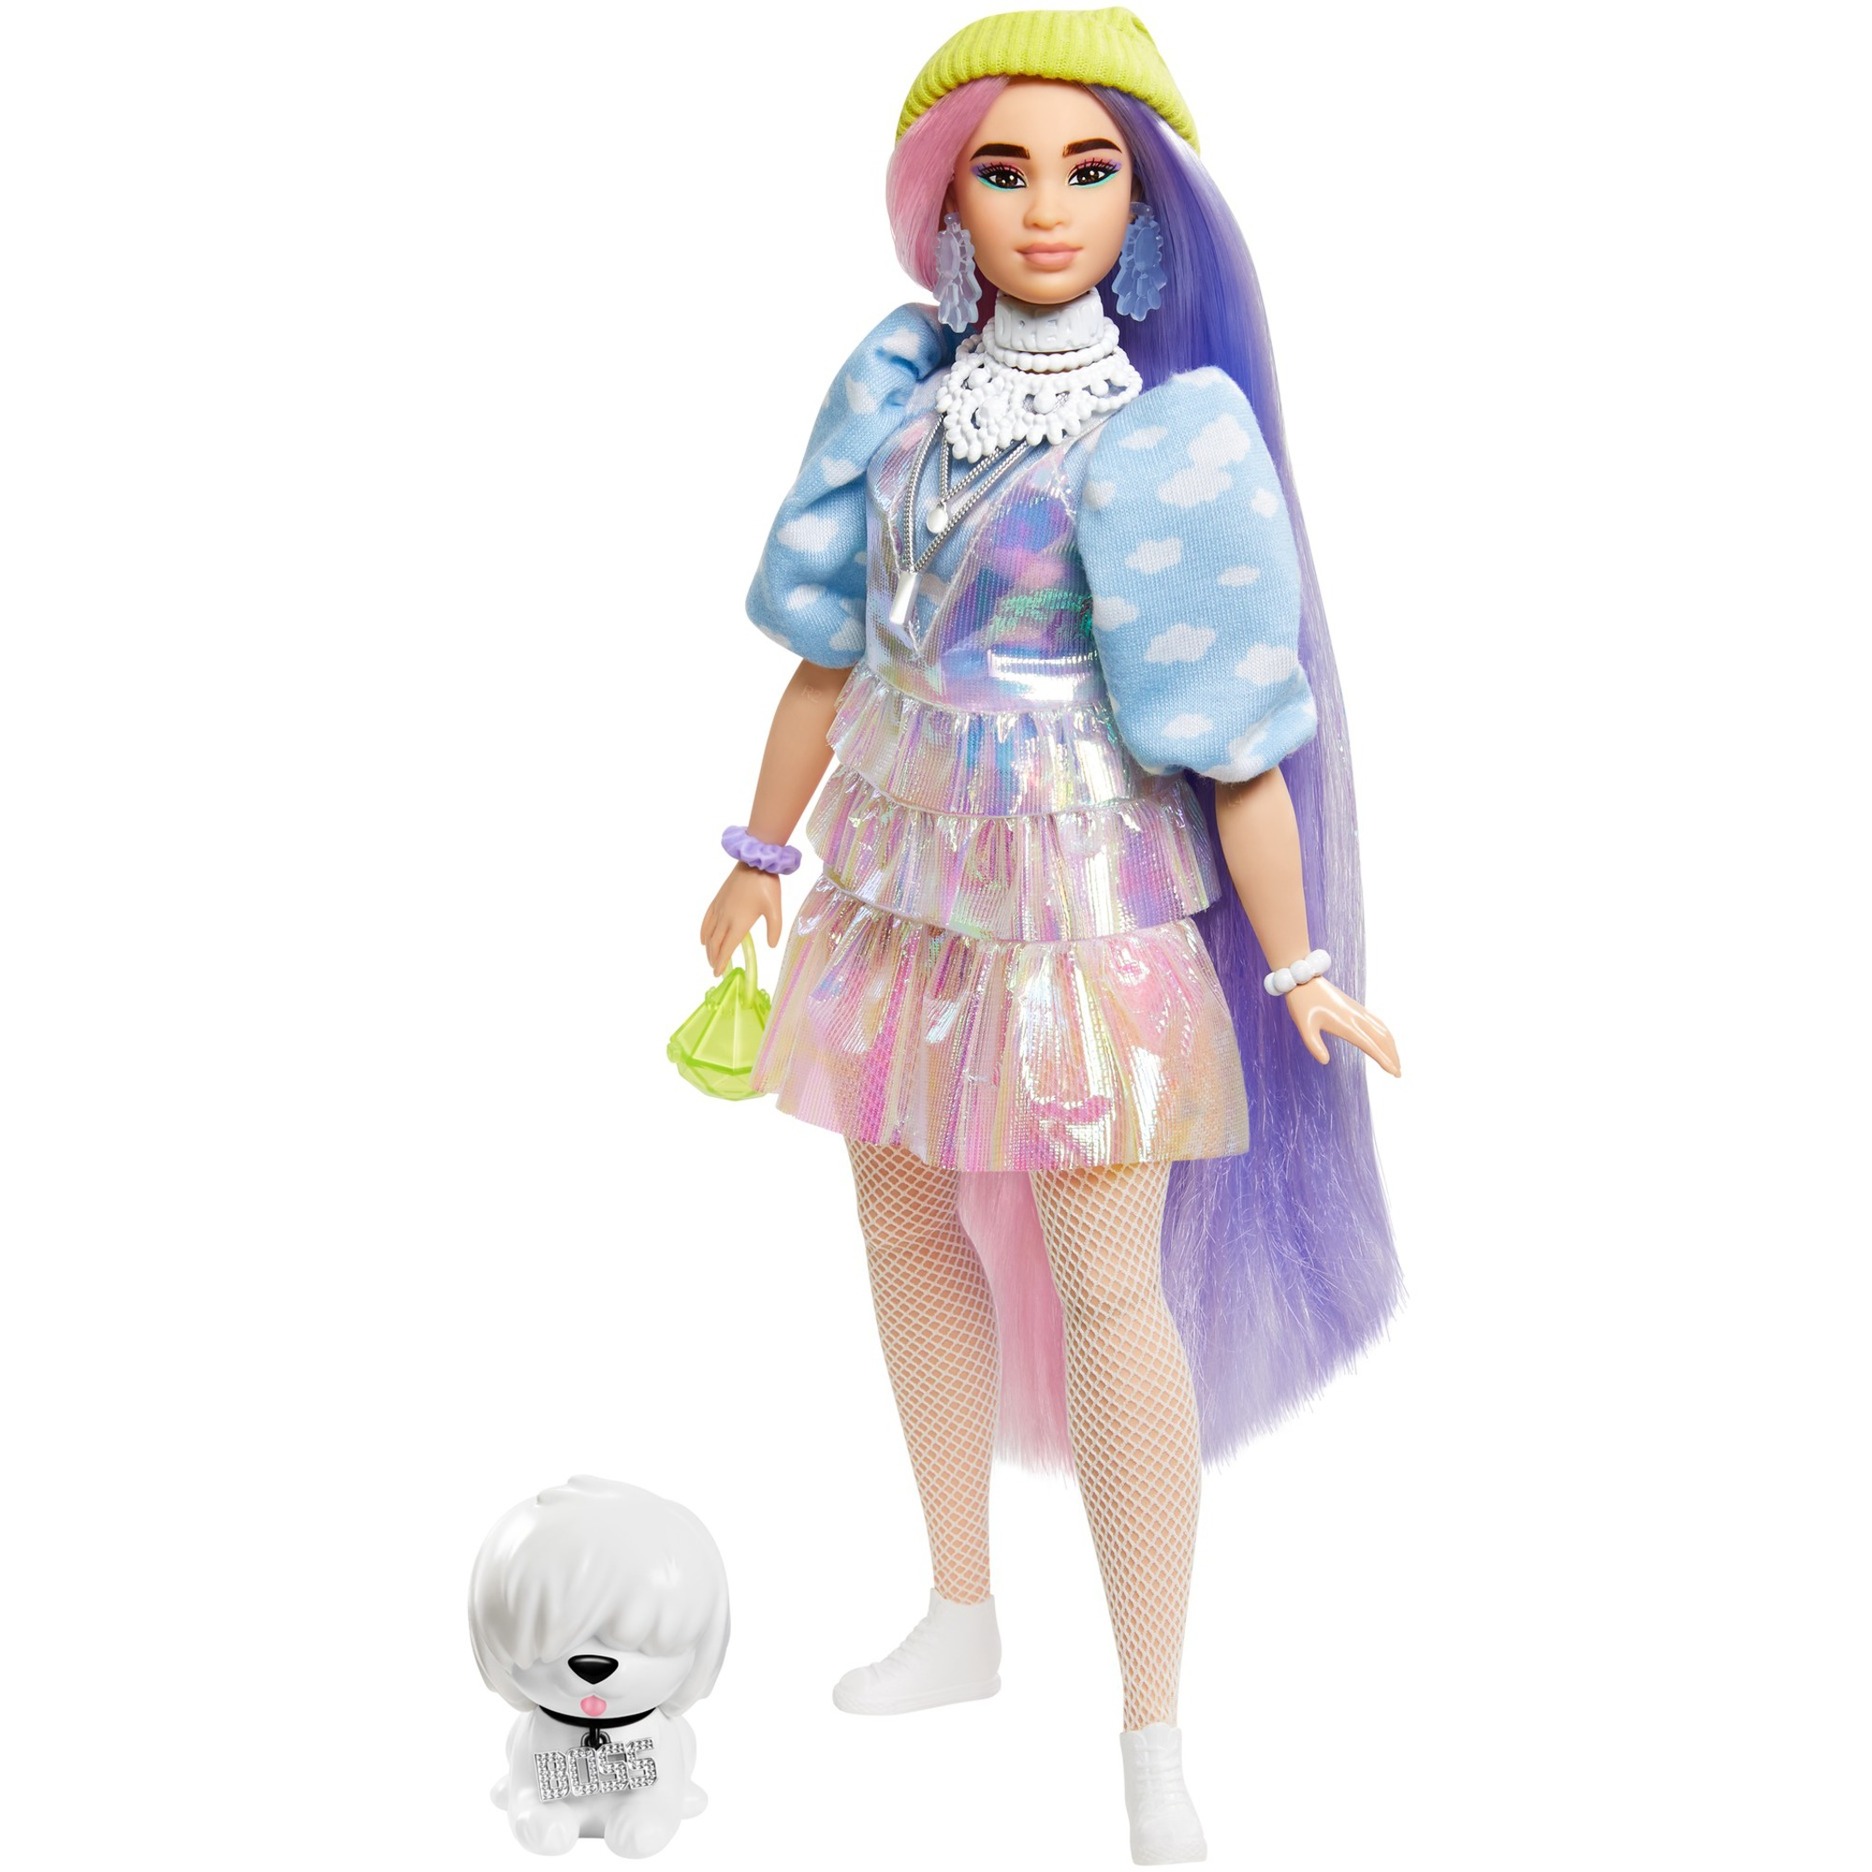 Image of Alternate - Barbie Extra Puppe mit langen Pastell-Haaren, inkl. Haustier online einkaufen bei Alternate